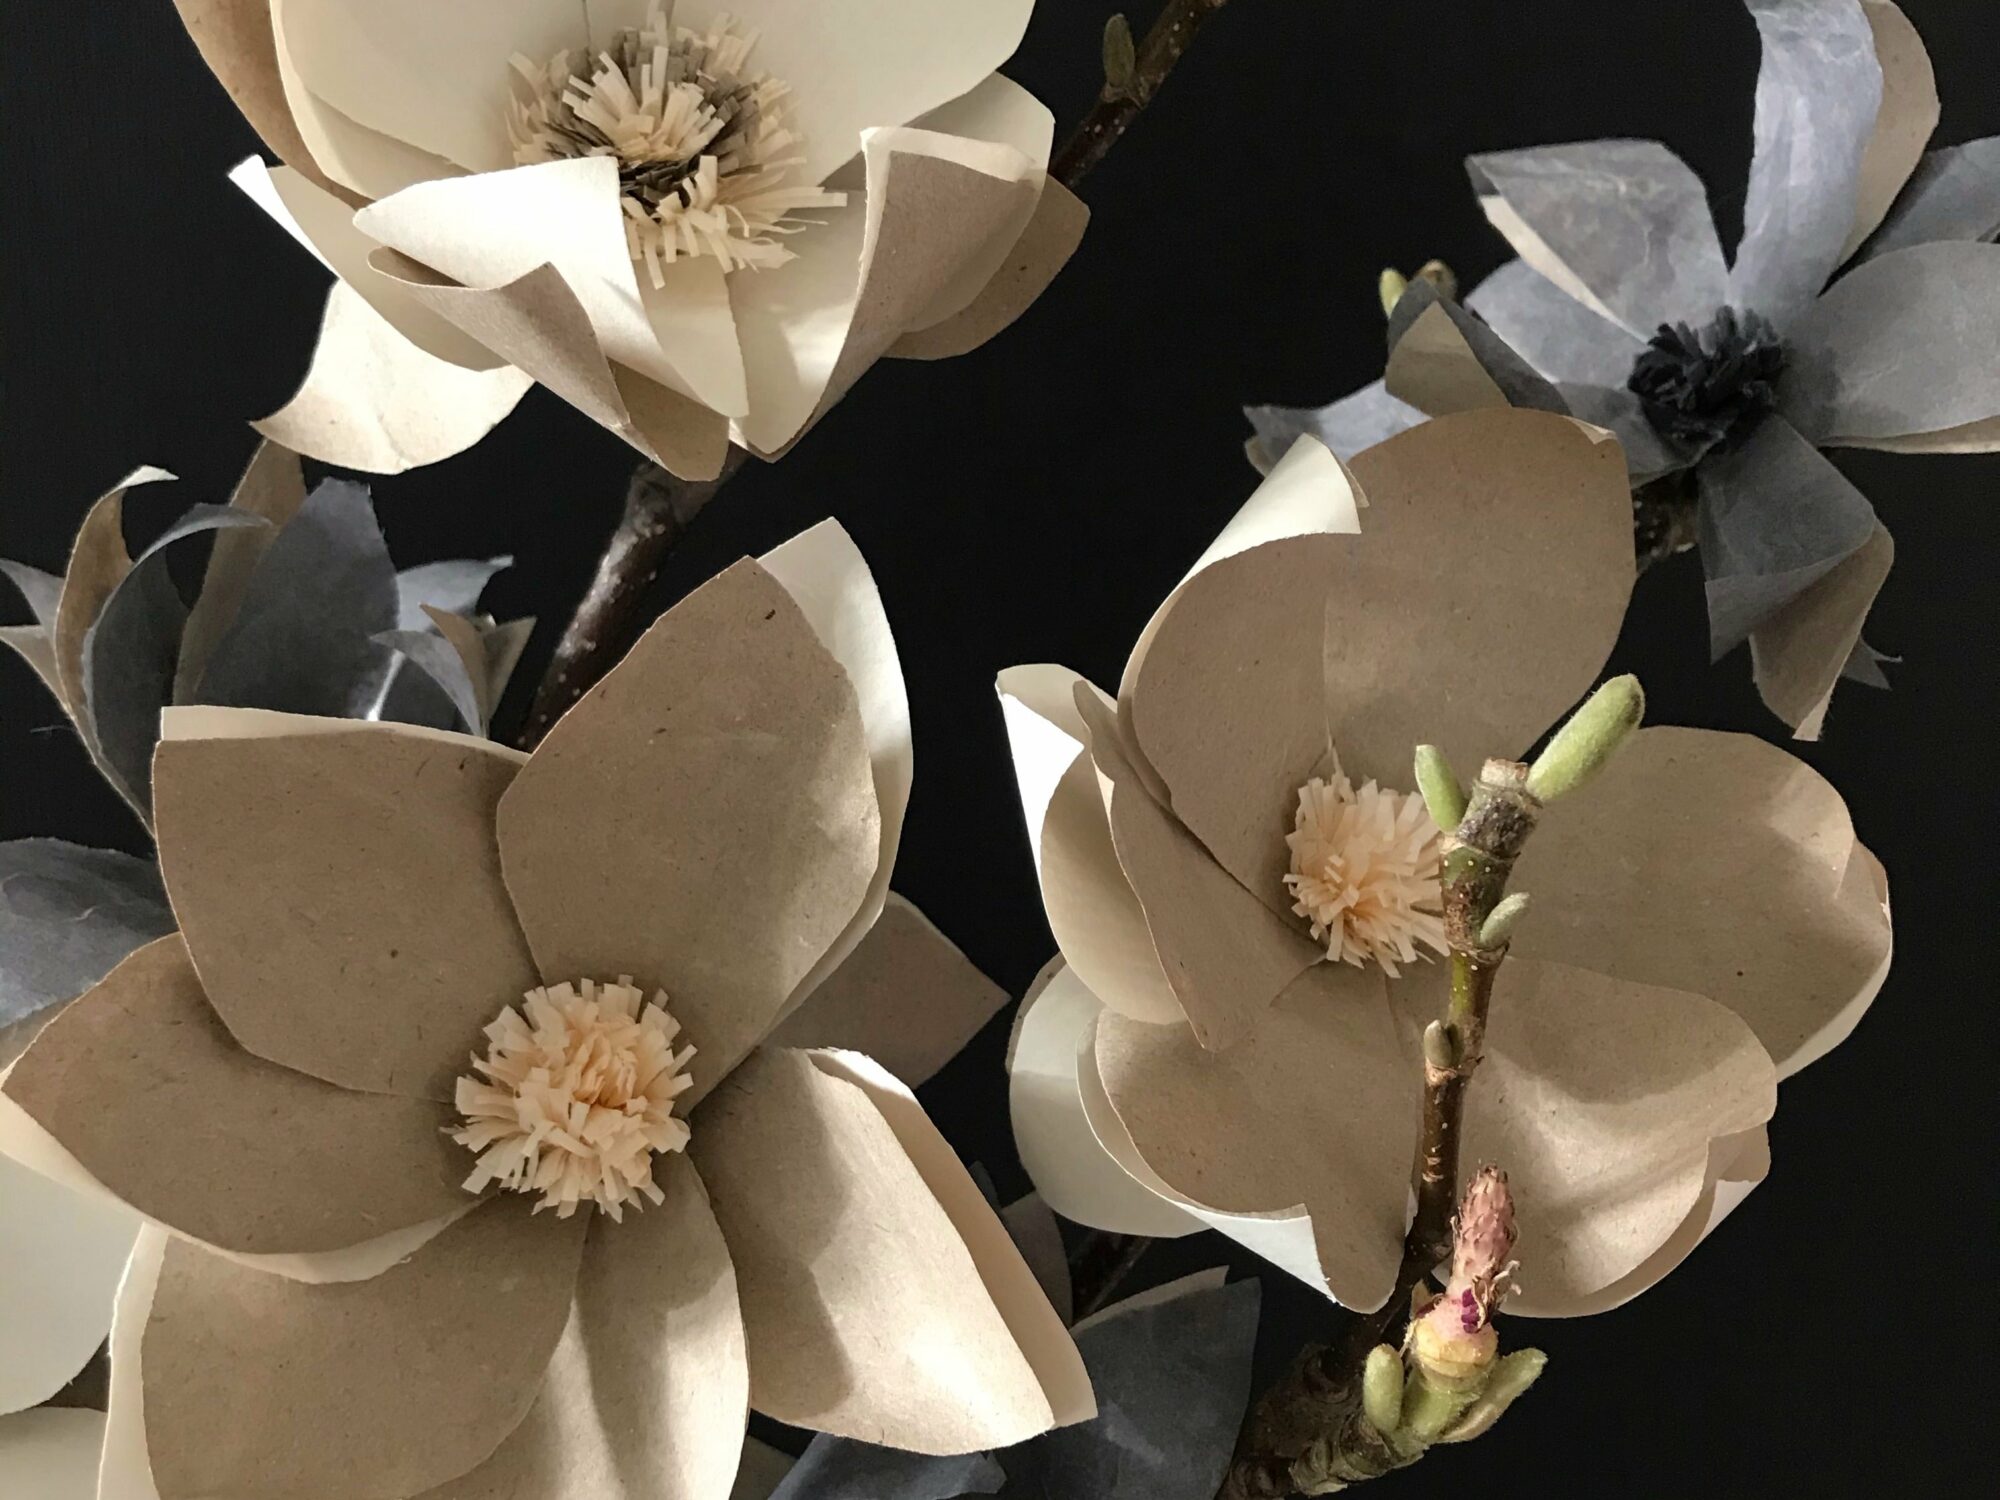 DIY Magnolie aus Papier basteln. Magnolienzweige zur Deko. Papierblume aus Seidenpapier, Geschenkpapier oder Packpapier selber machen. #Chalet8 #Magnolie #Papierblume #Frühlingsdeko #bastelnmitpapier